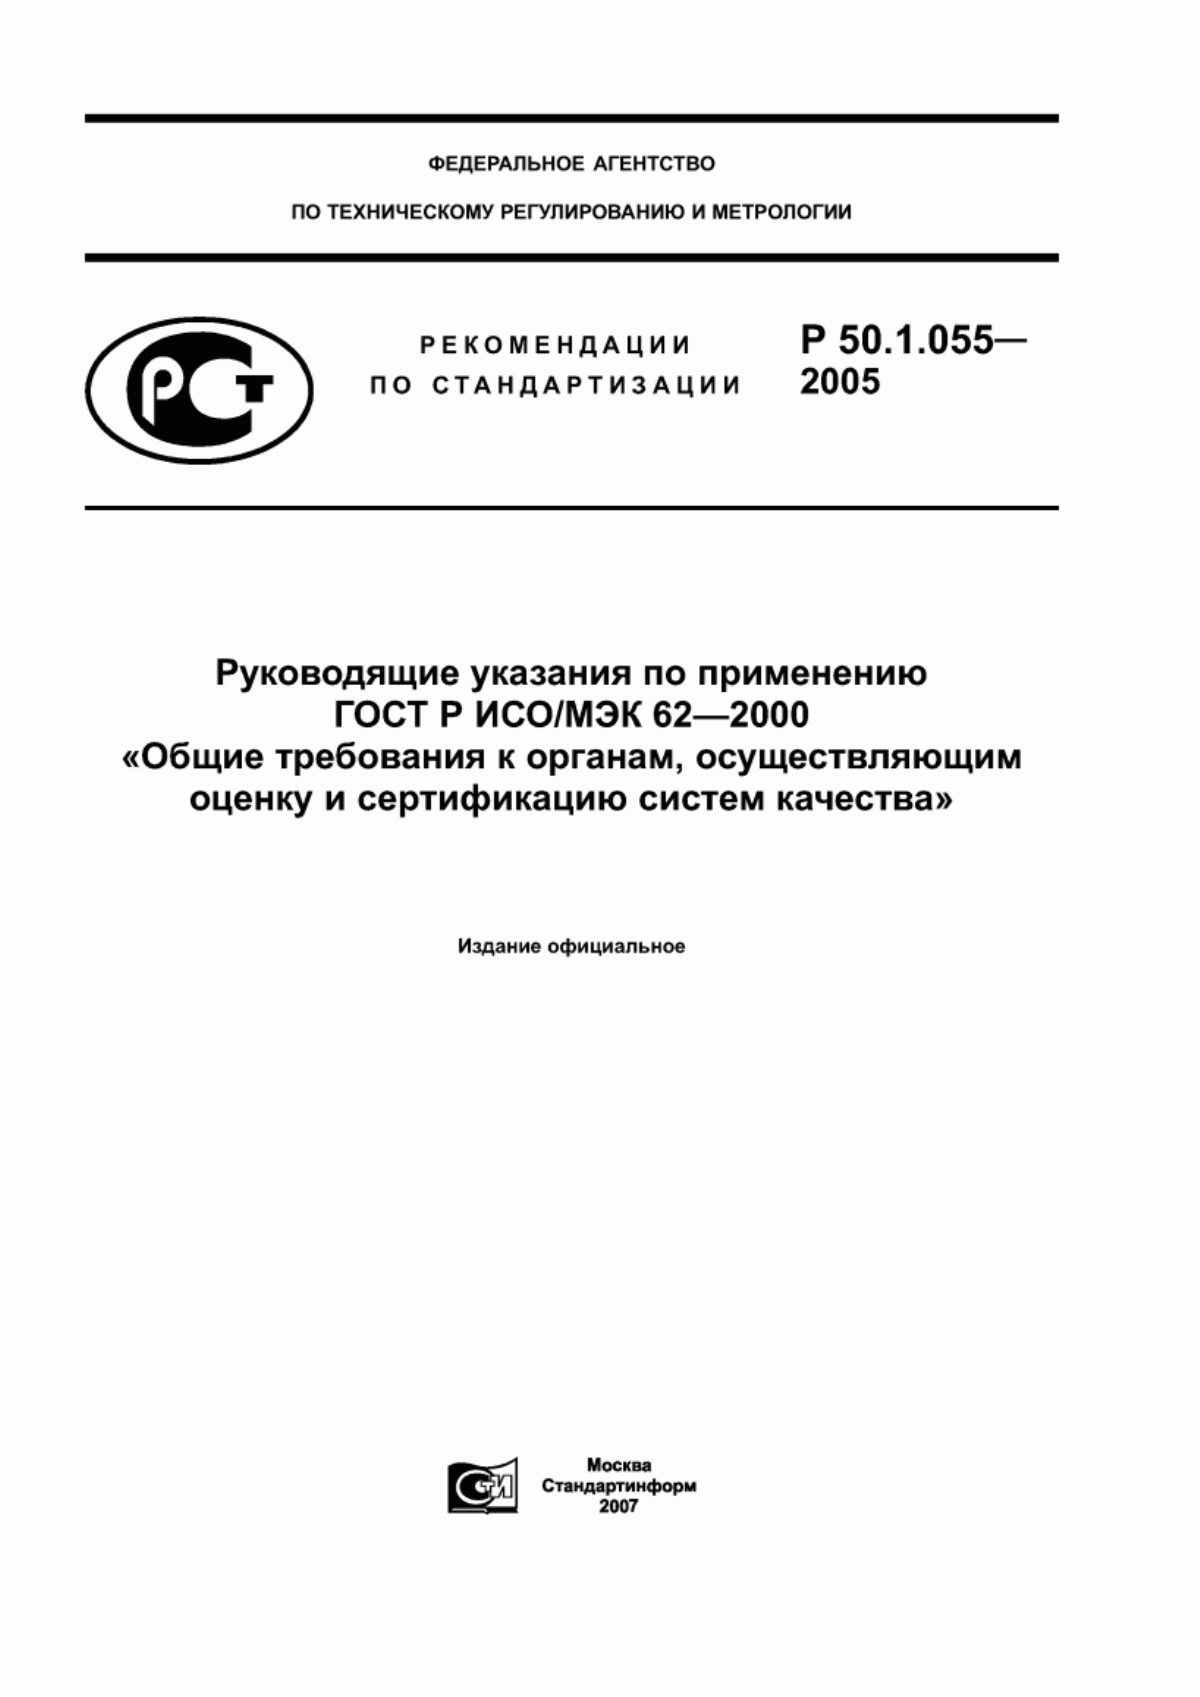 ГОСТ Р ИСО/МЭК 62-2000 Общие требования к органам, осуществляющим оценку и сертификацию систем качества